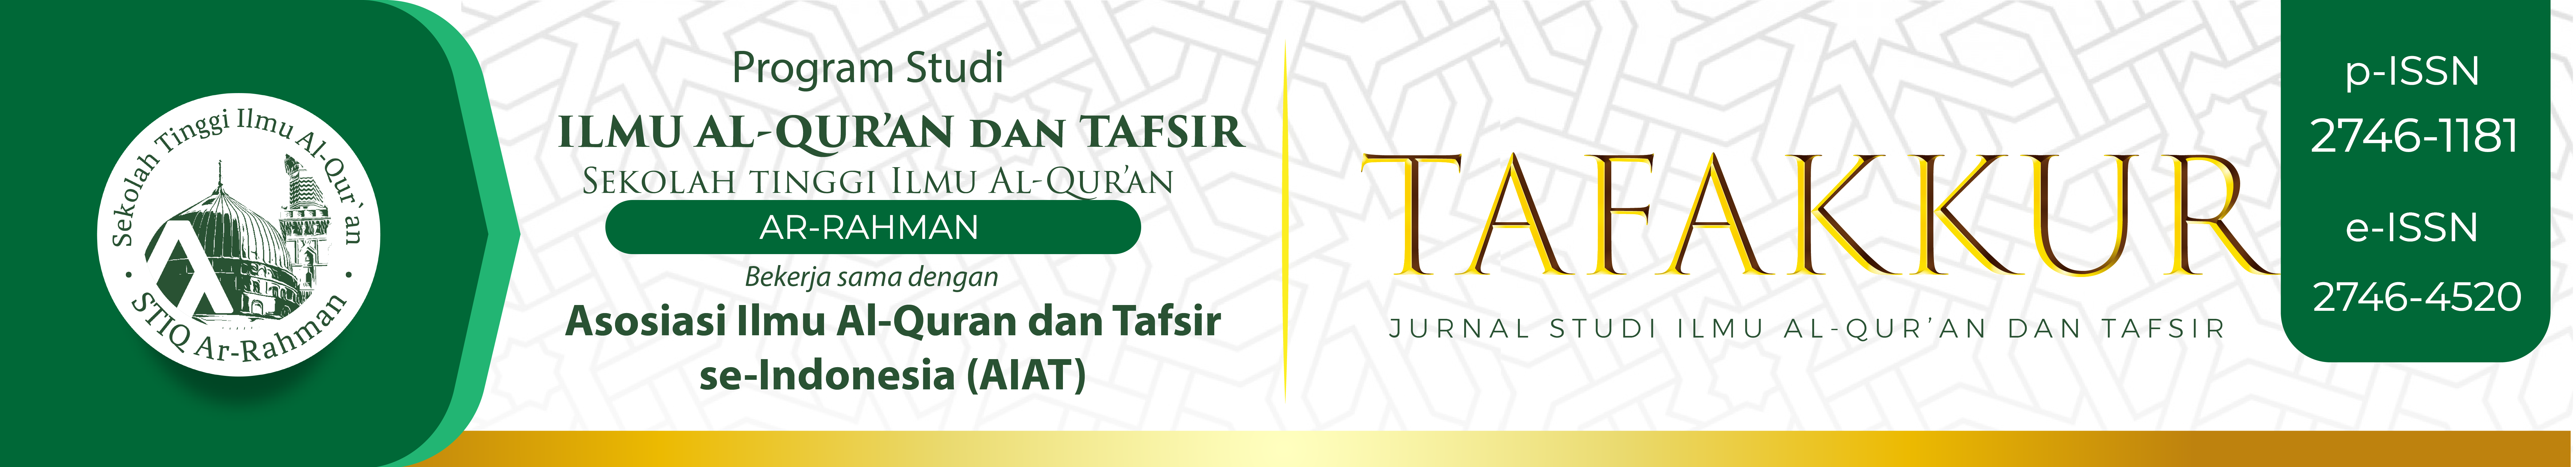 Tafakkur: Jurnal Ilmu Al-Qur'an dan Tafsir